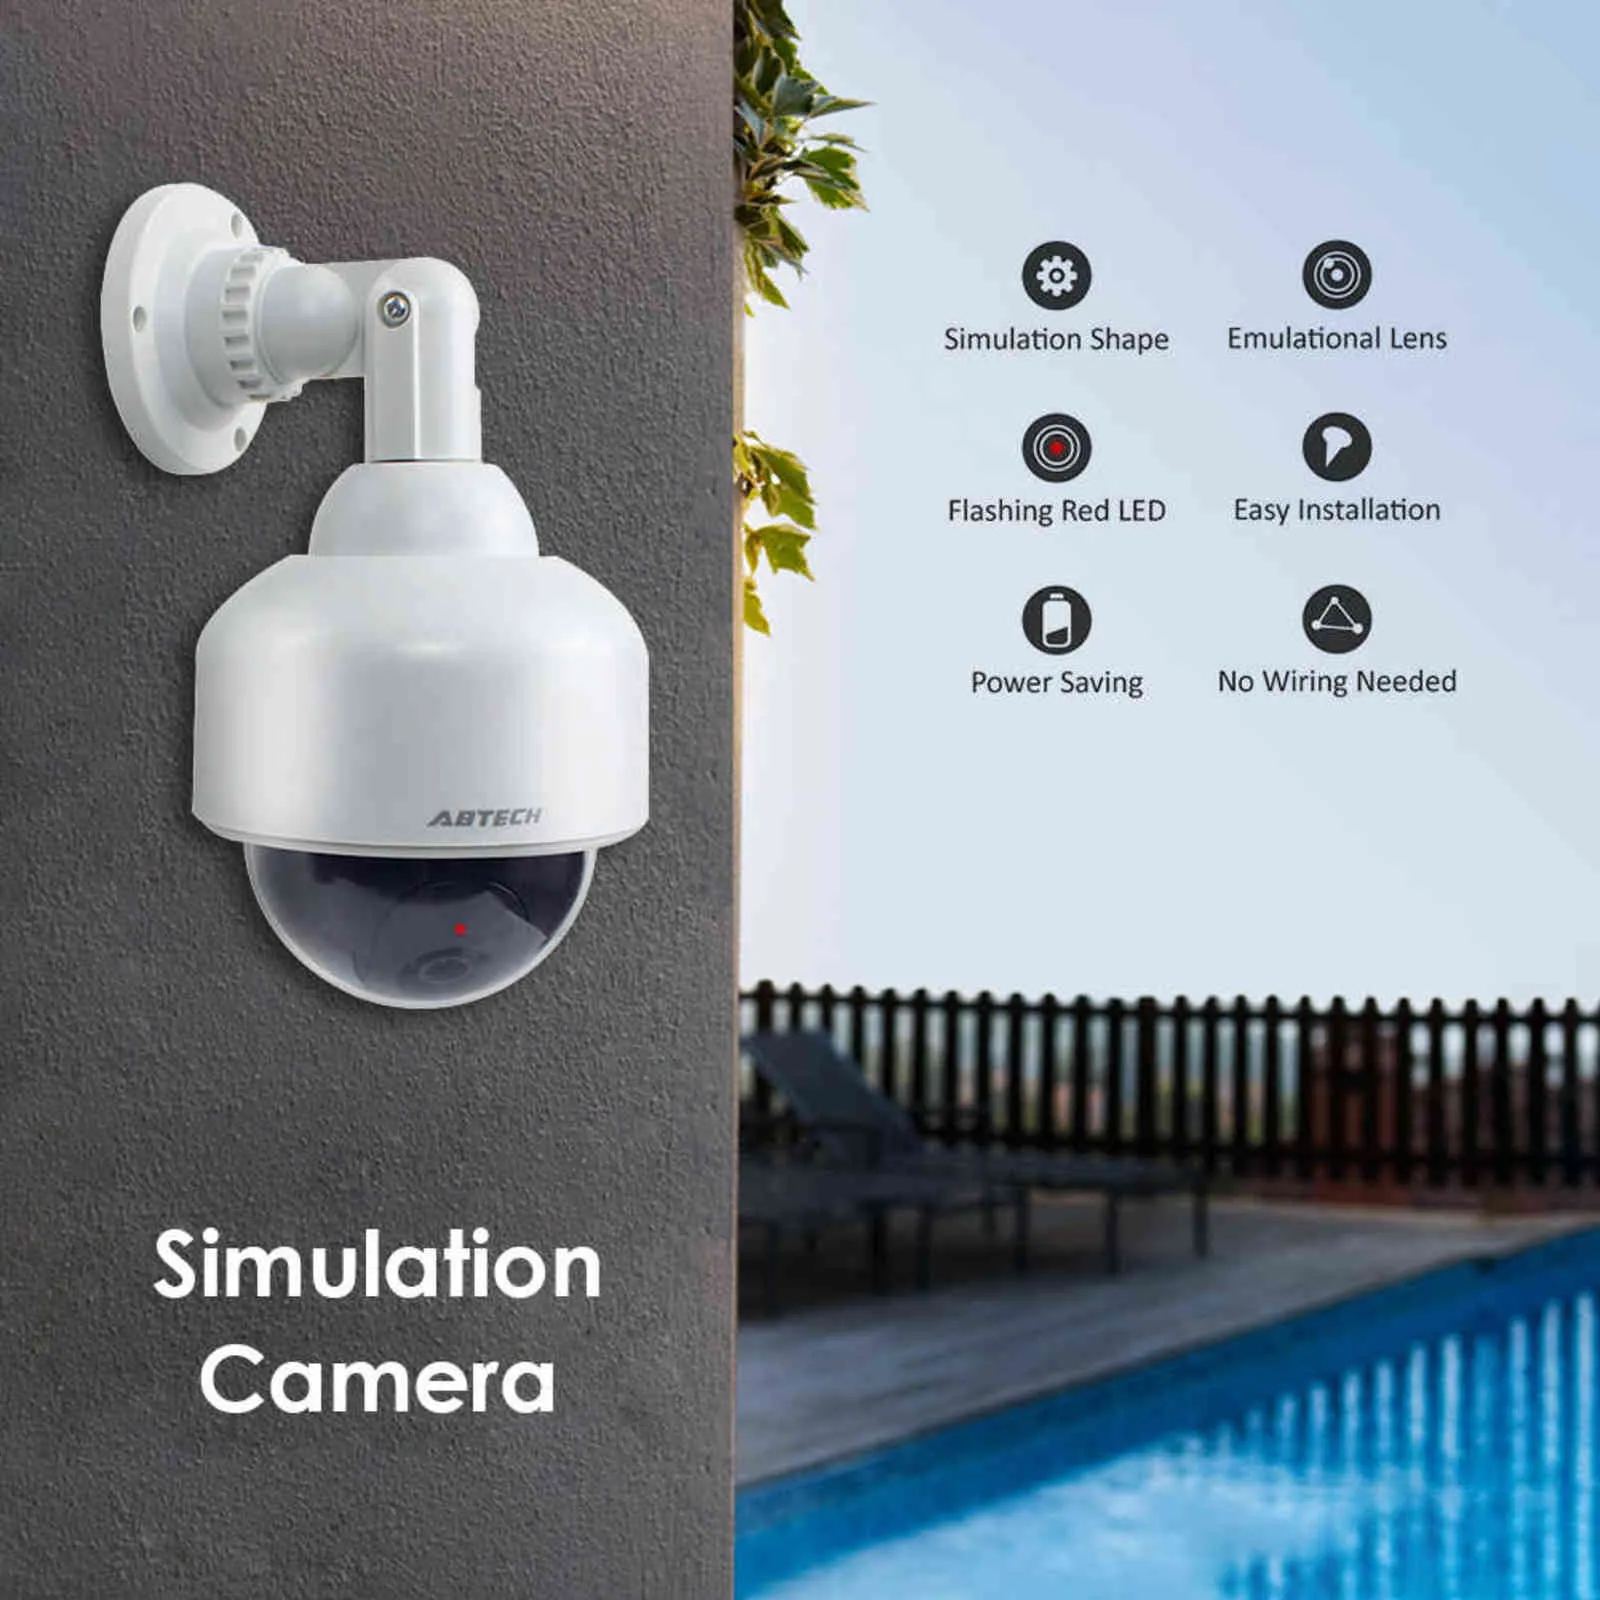 Boule ronde fausse caméra factice alimentée par batterie 360 degrés rotatif clignotant LED simulation surveillance CCTV moniteur de sécurité H1117